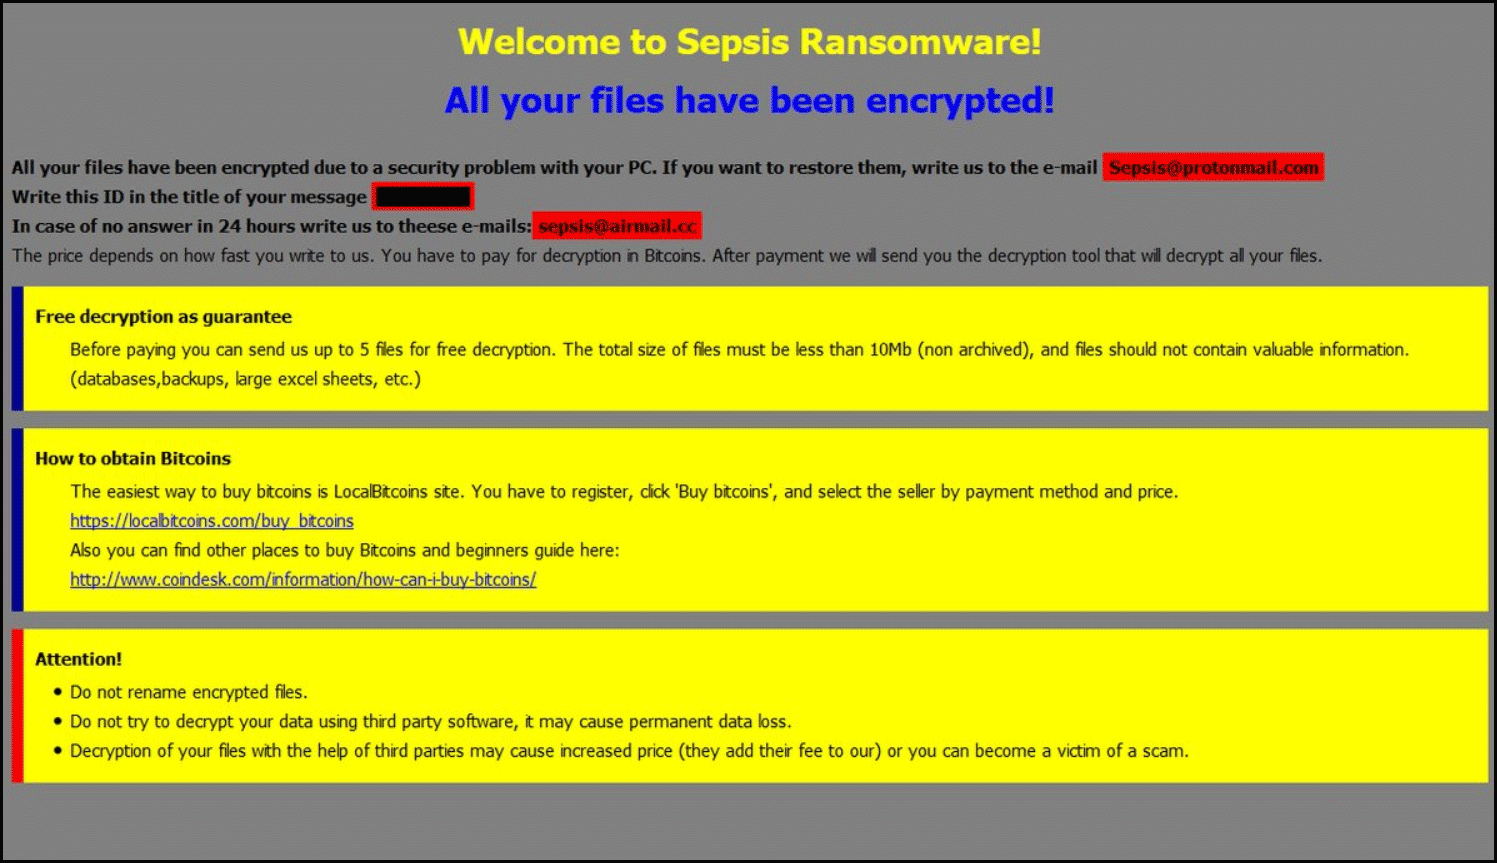 Nota de resgate do Sepsis Ransomware